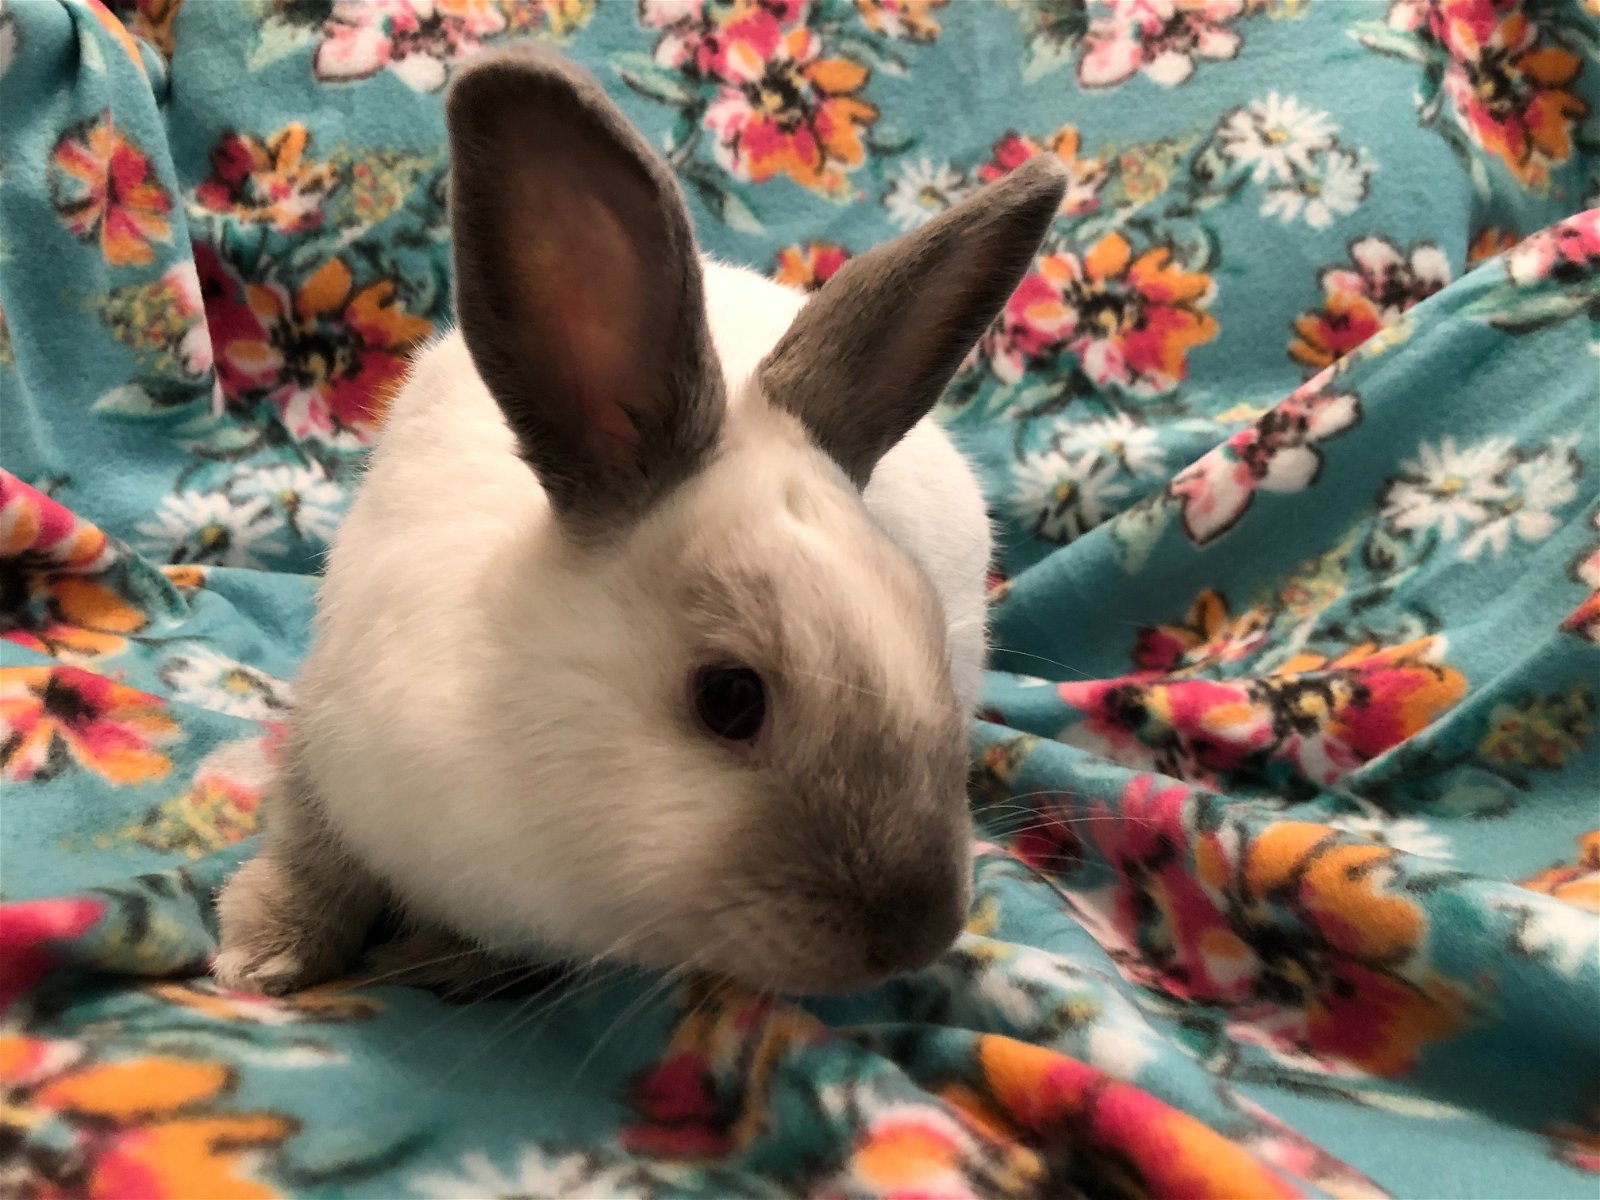 adoptable Rabbit in Baton Rouge, LA named Vin